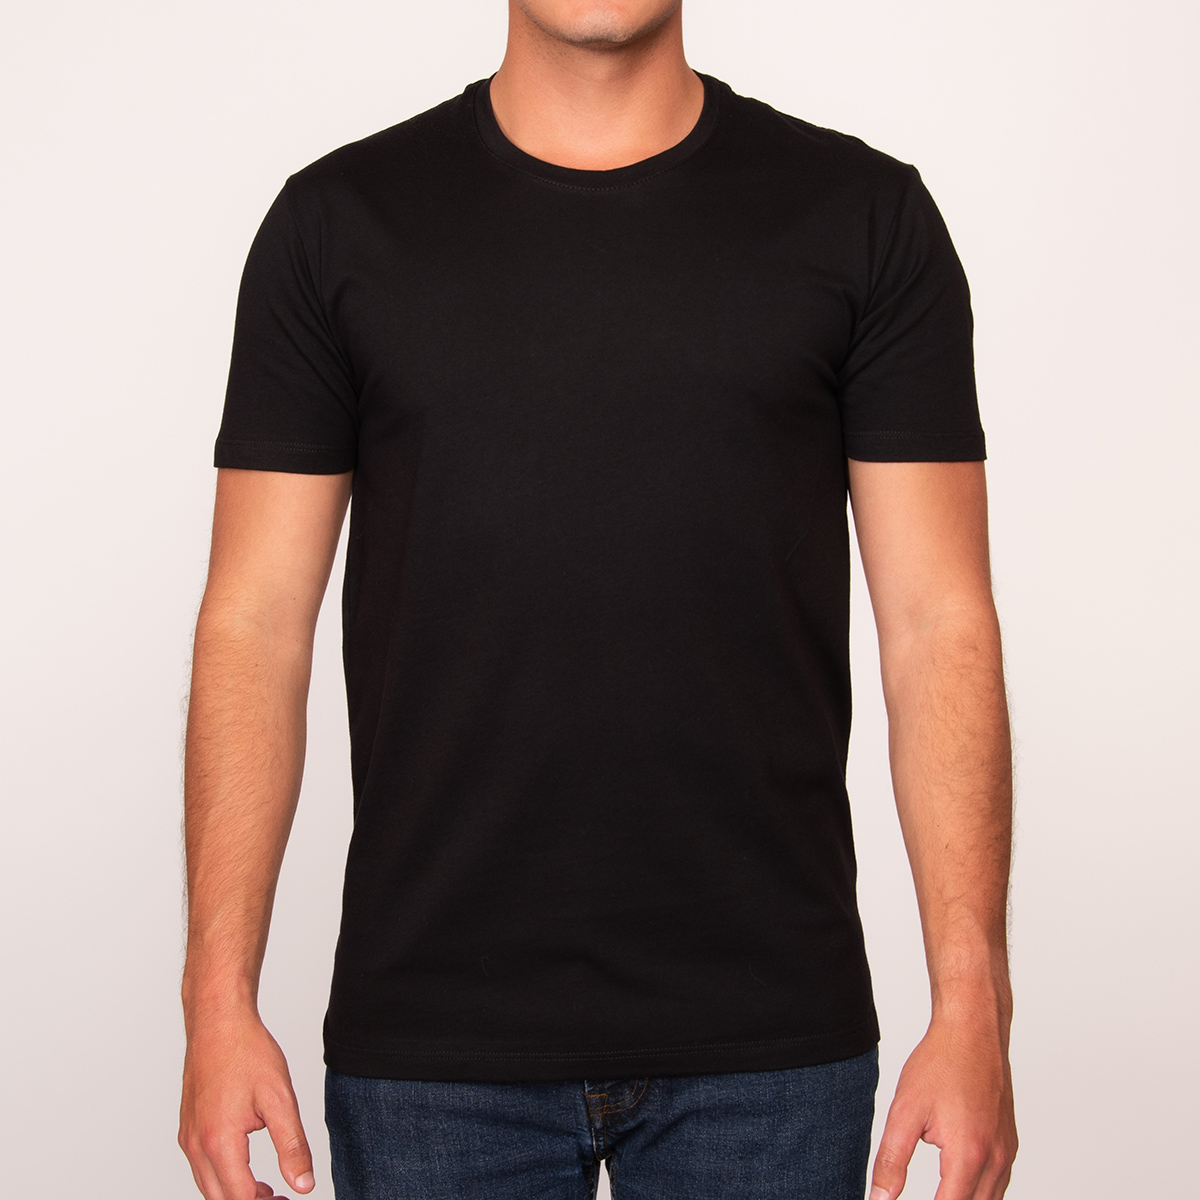 Camisetas negras de hombre, Camisetas negras para hombre